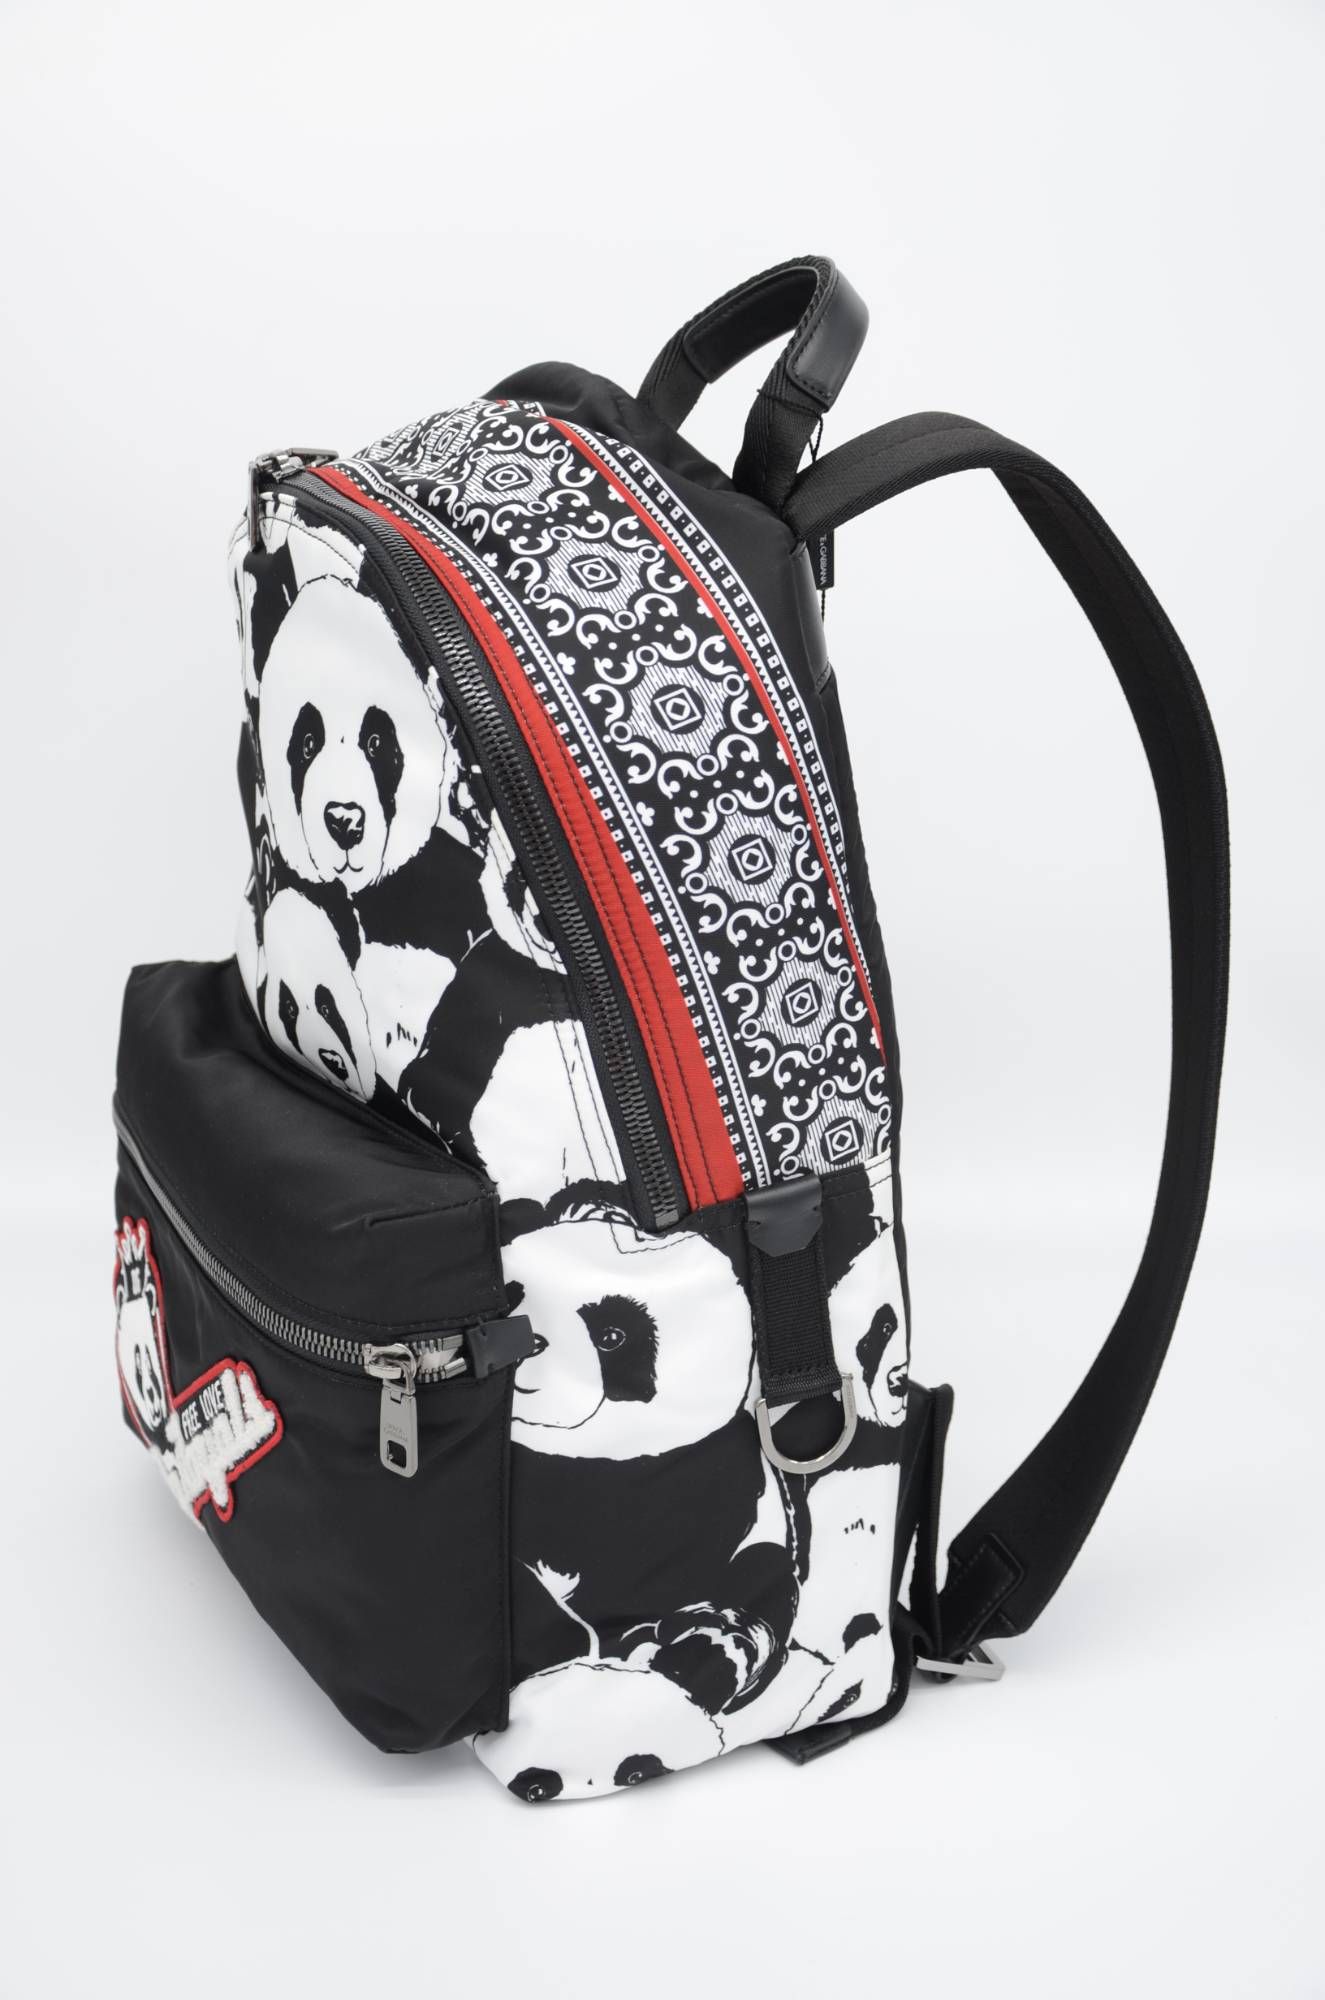 Dolce & Gabbana Men Panda Backpack
Panda Print